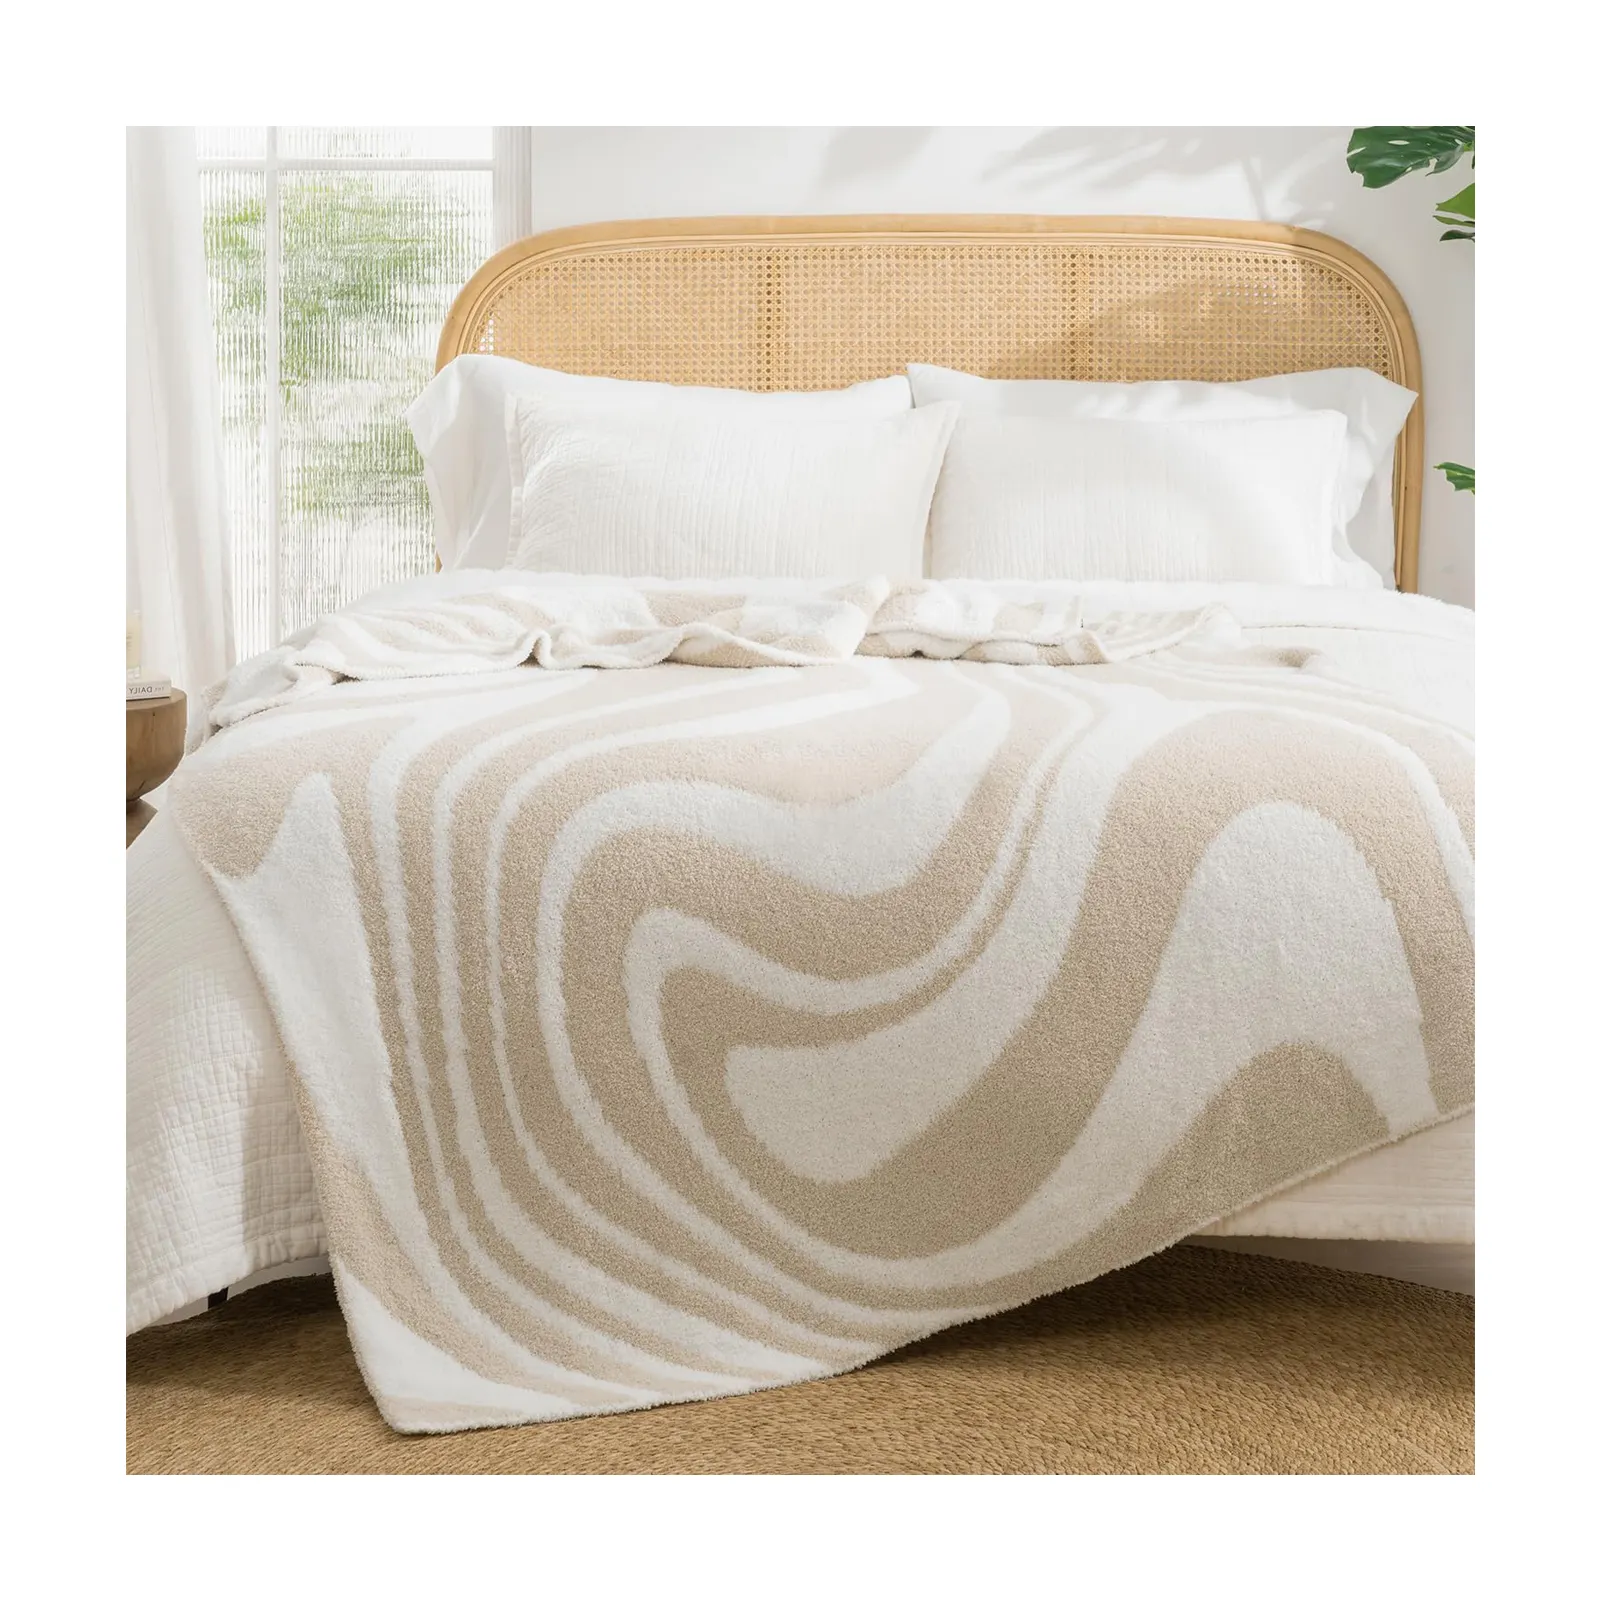 Mais recente Checkerboard Chunky Jacquard Cobertores De Malha Único Tamanho Duplo Cama Quente Fofo Plush Lança Cobertor